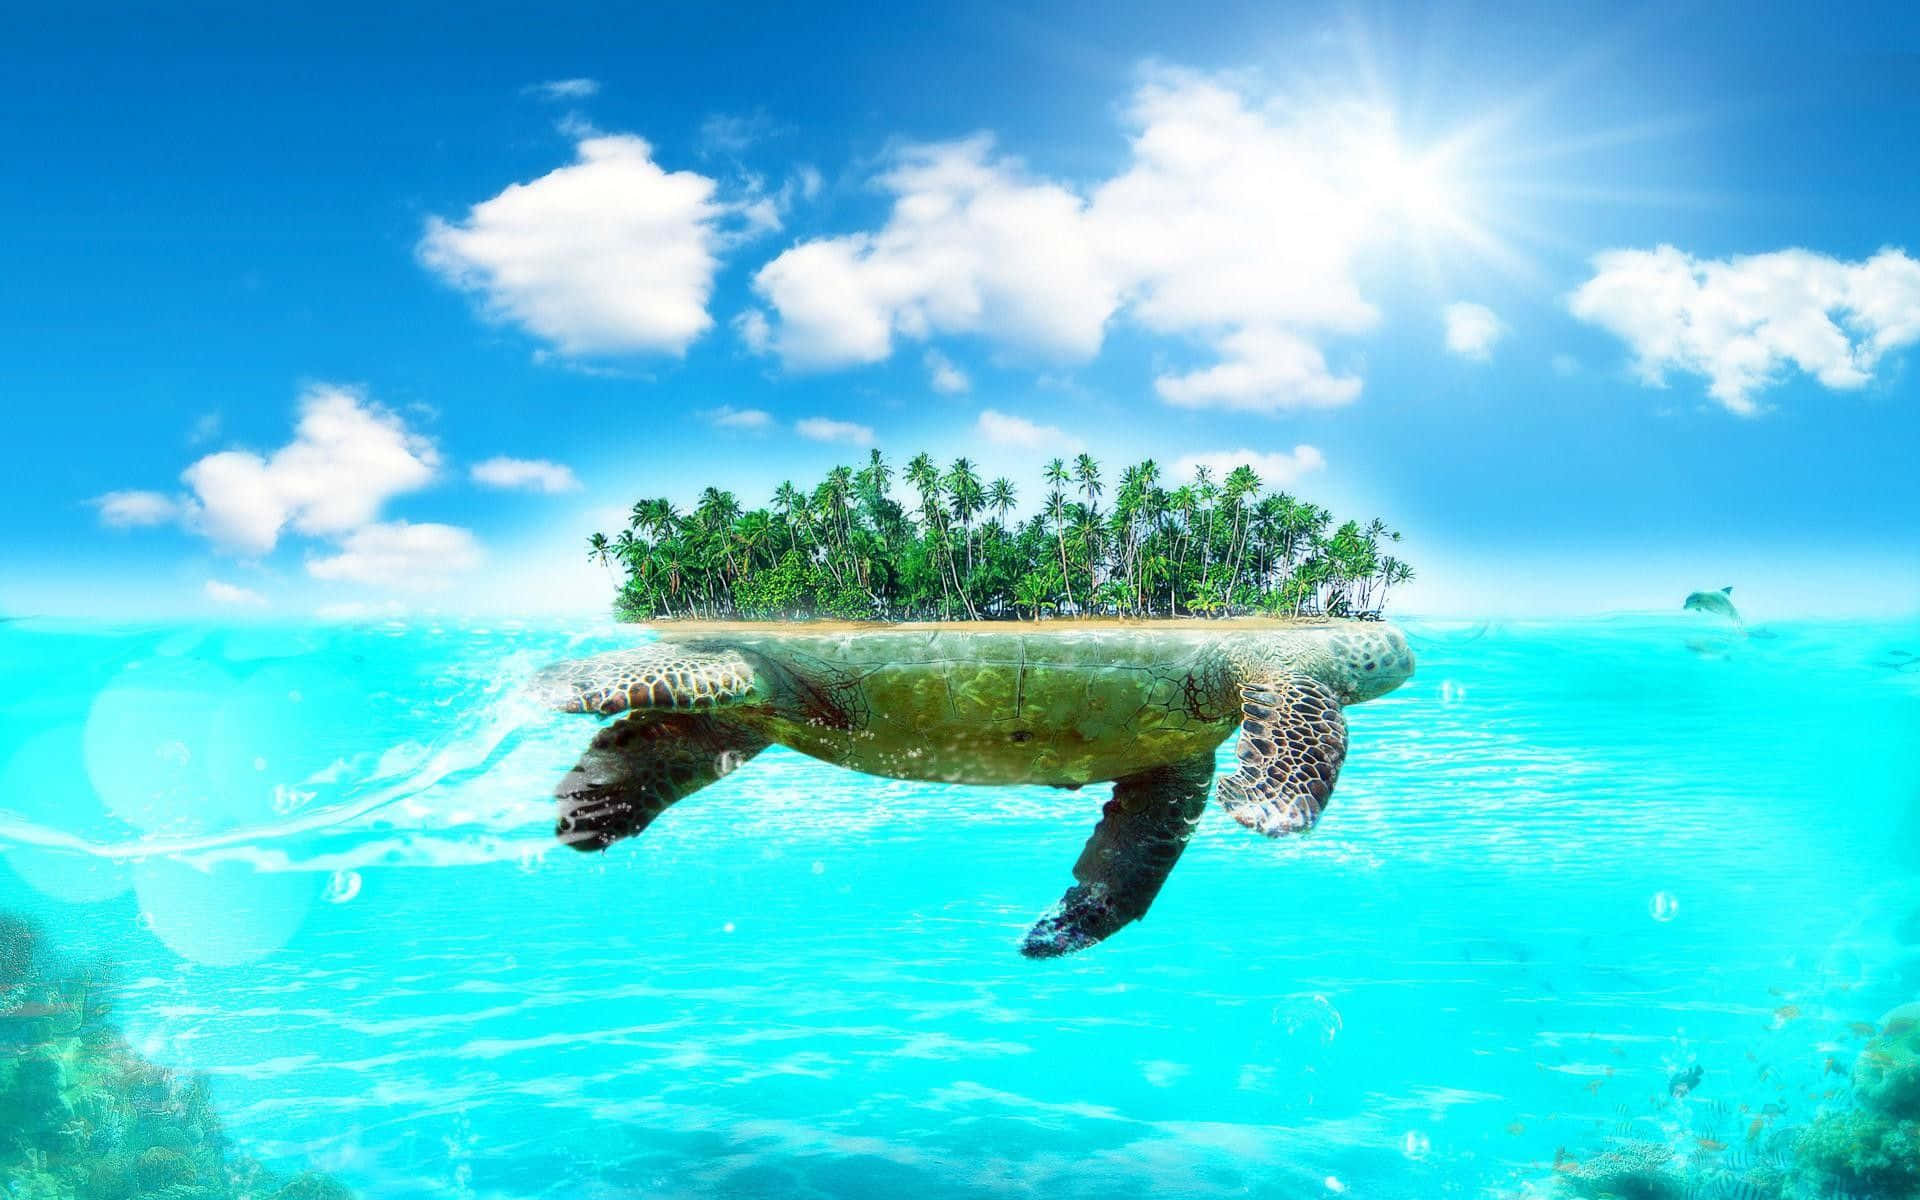 Imagemfoto De Uma Pequena Ilha Com Praias De Areia Branca E Águas Cristalinas Azul-turquesa.